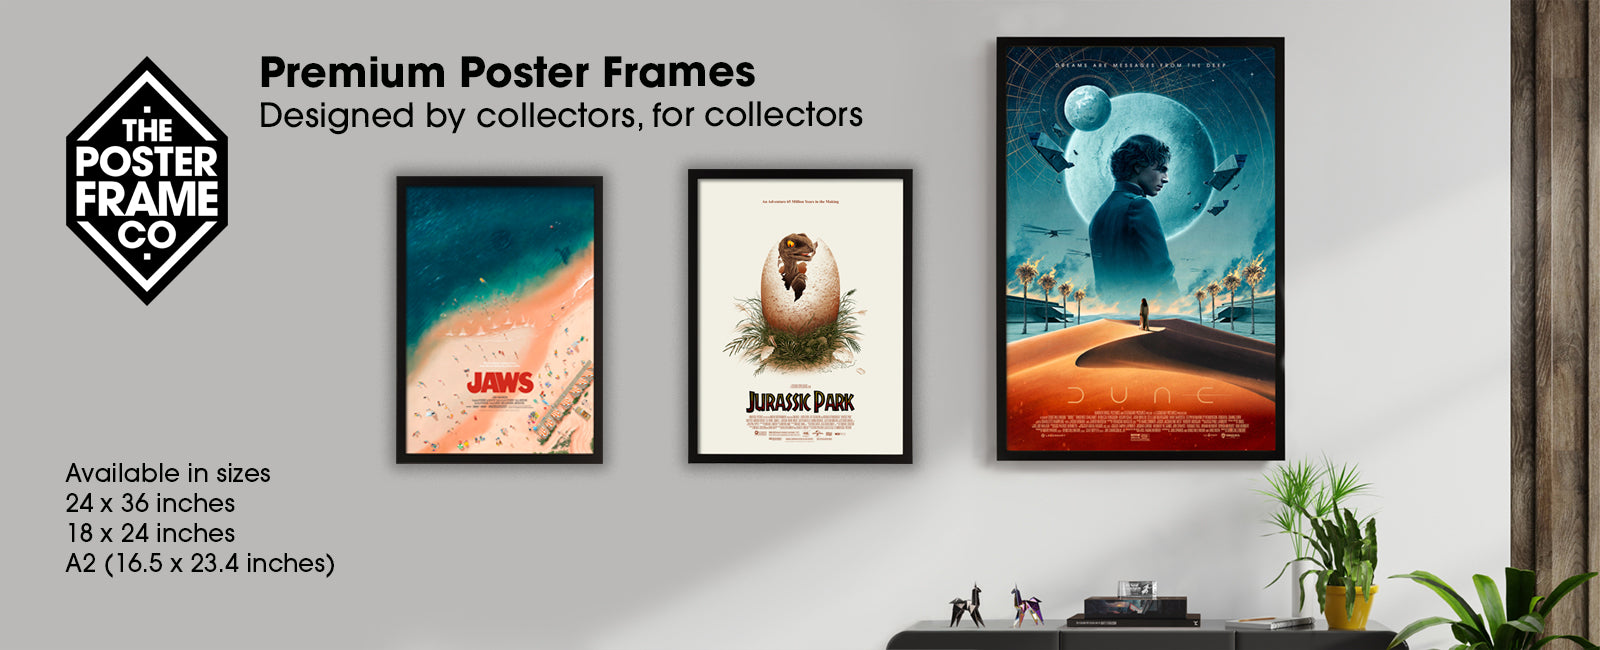 a2 poster frames